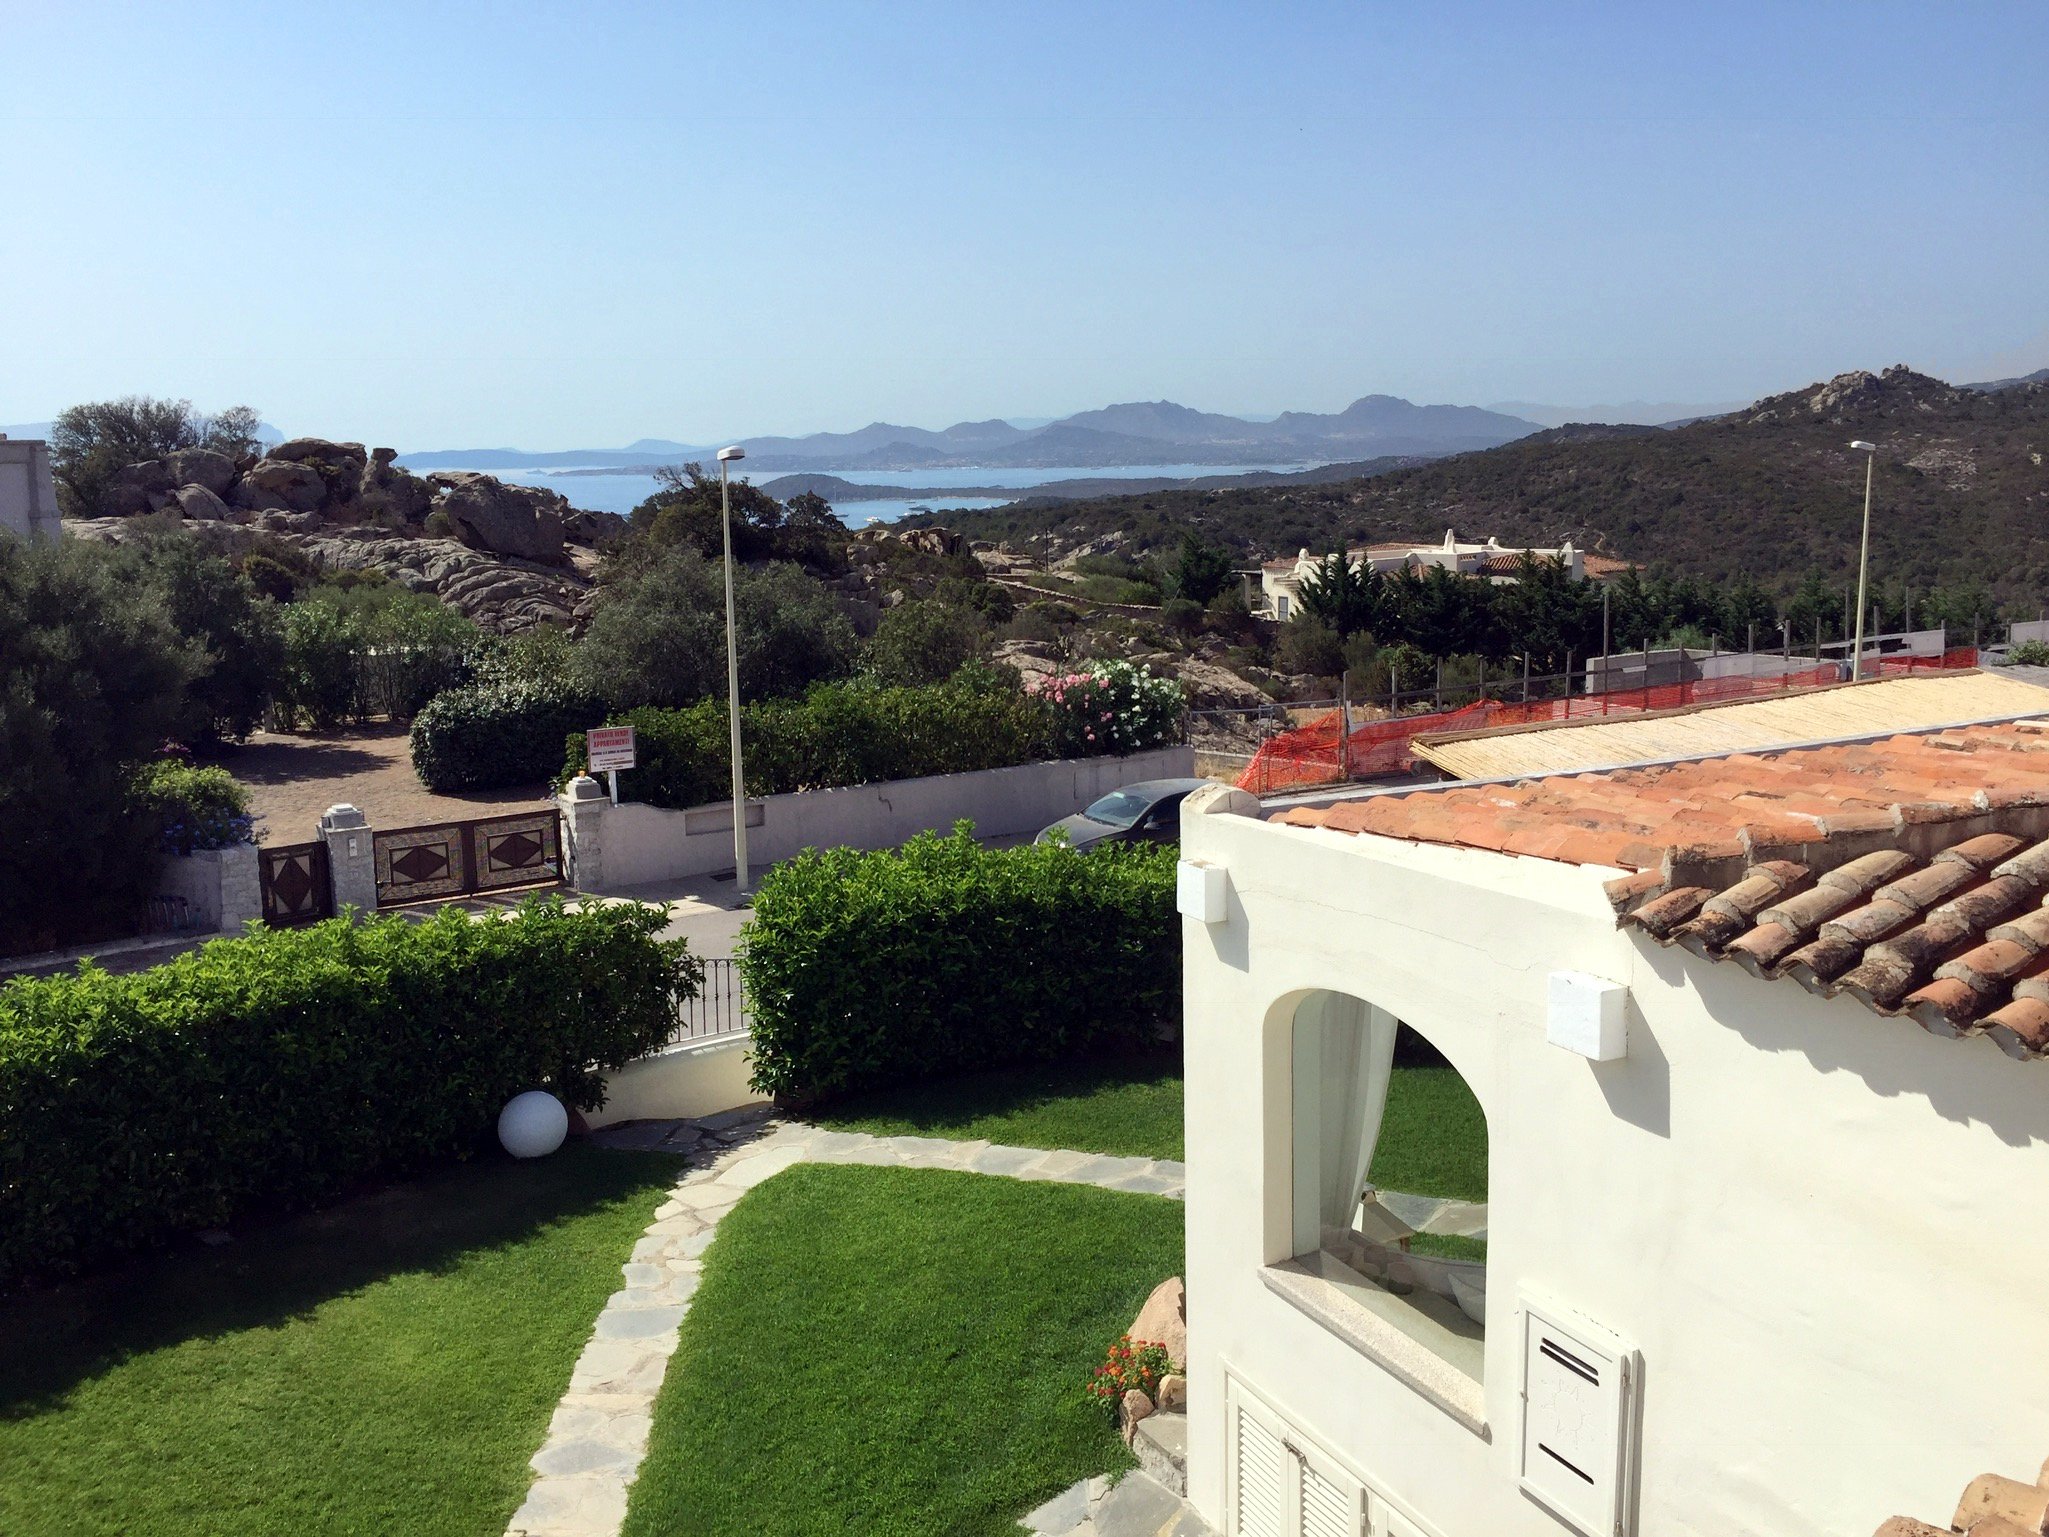 Sea View Home for Sale in Abbiadori, Porto Cervo, North Sardinia